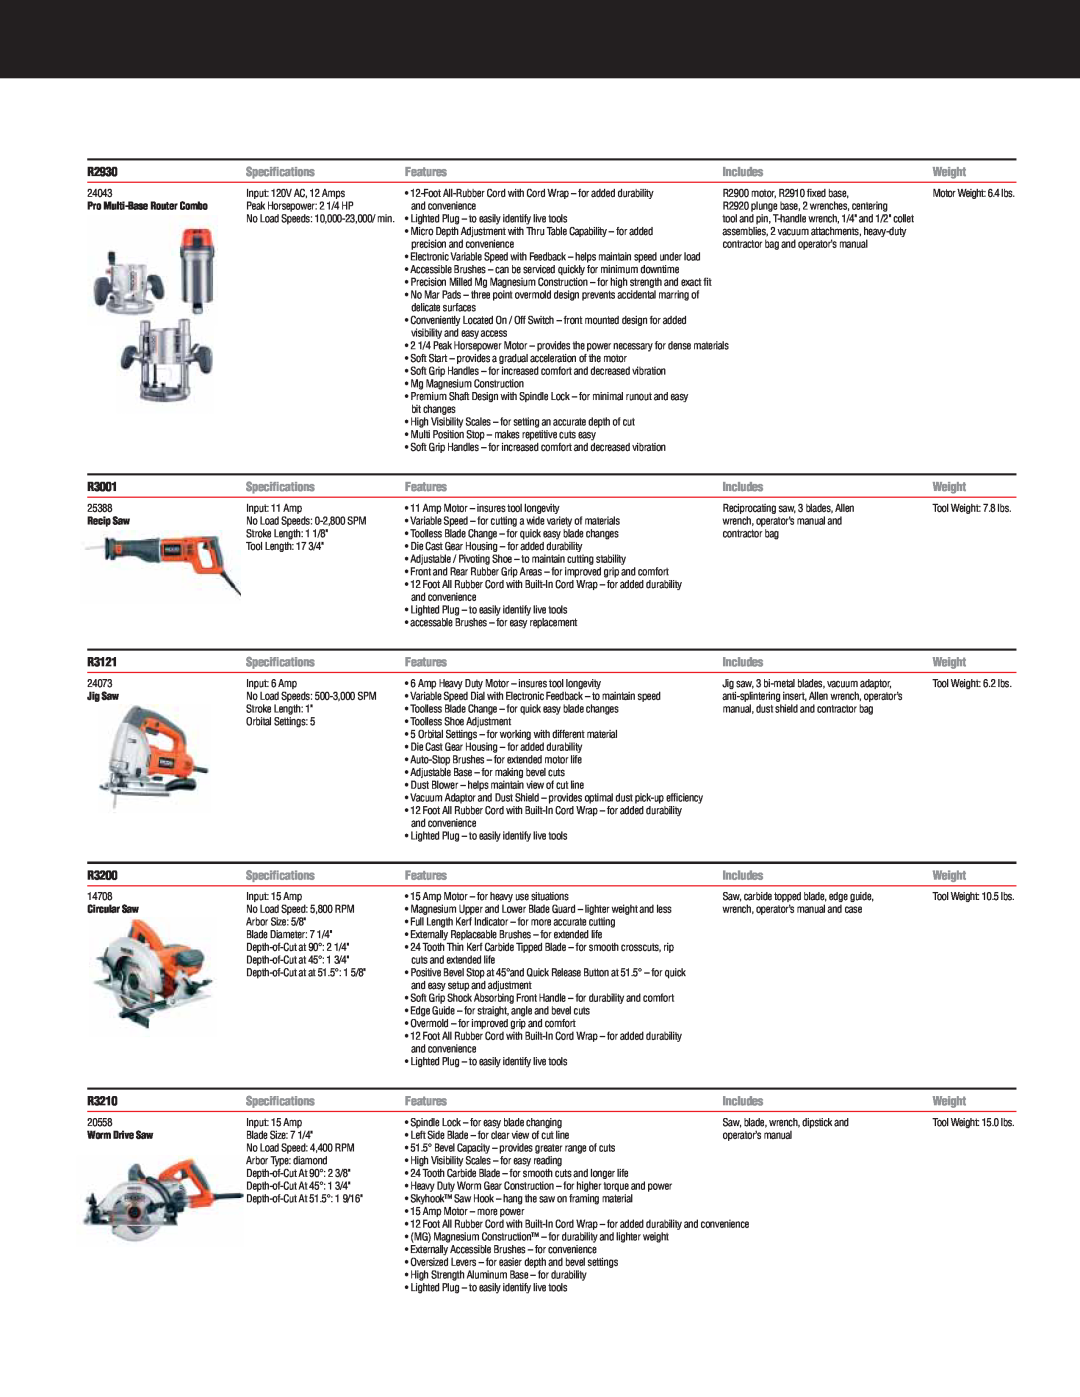 RIDGID R932, R9213 specifications R2930, R3001, R3121, R3200, R3210 